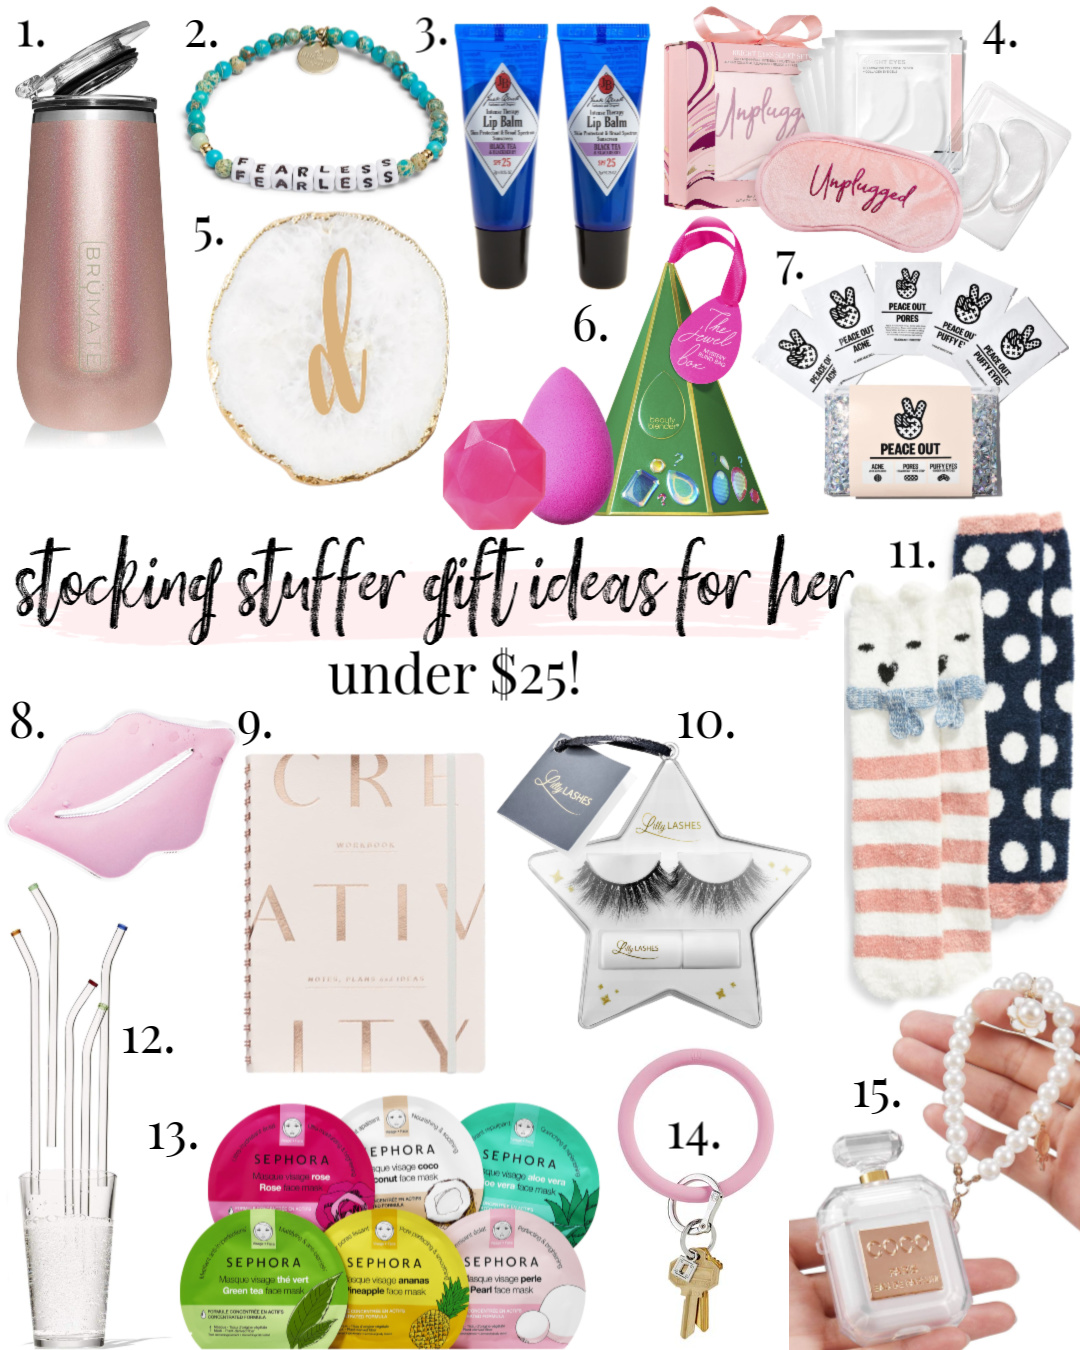 Gift Guide Under $25 & Under $50